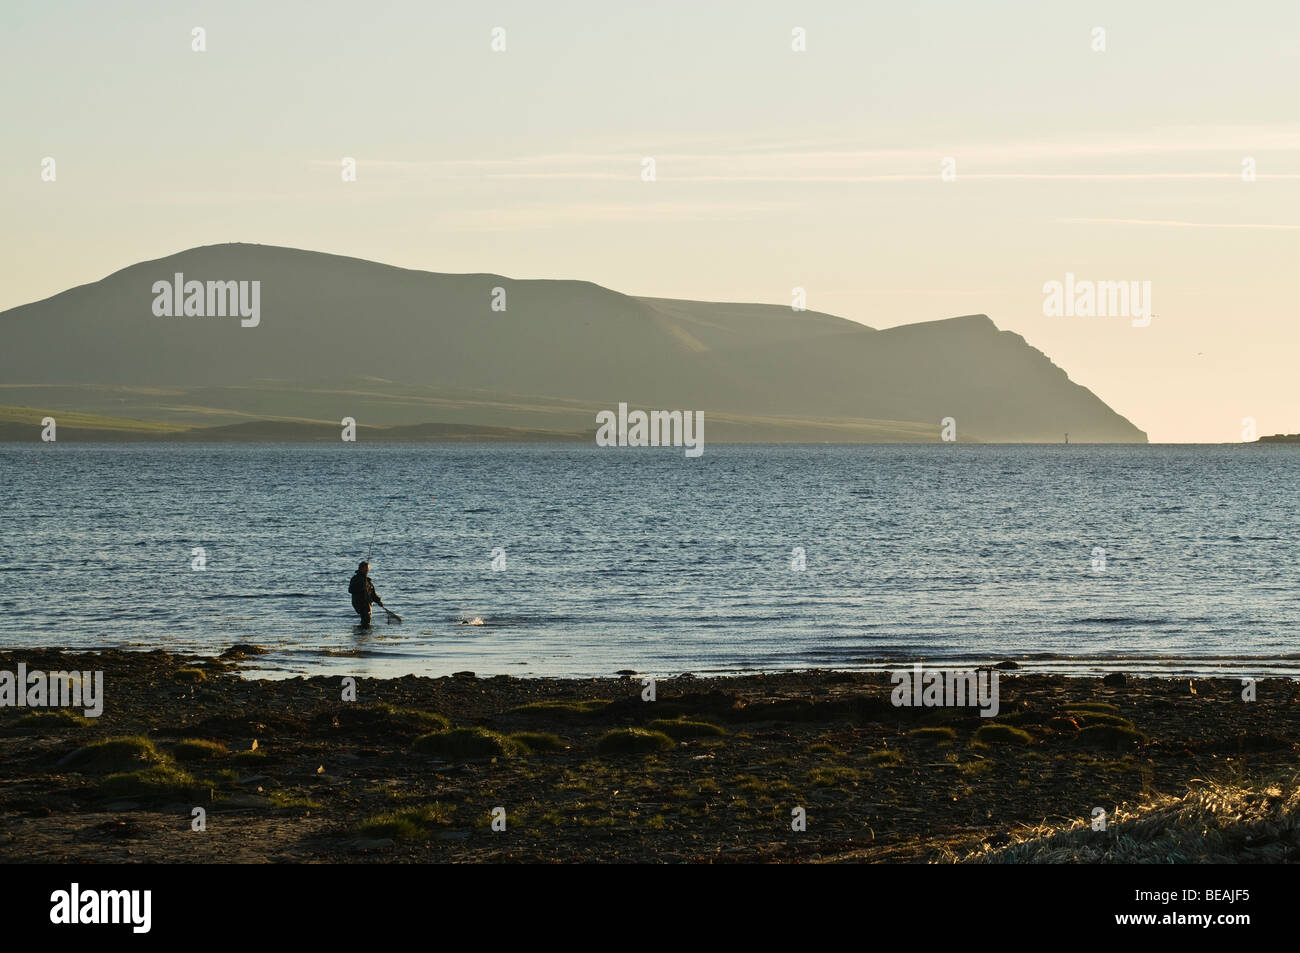 Dh pescatore di pesci di compensazione flusso SCAPA ORKNEY Wading pescatore cattura la pesca off shore sera Hoy colline Foto Stock